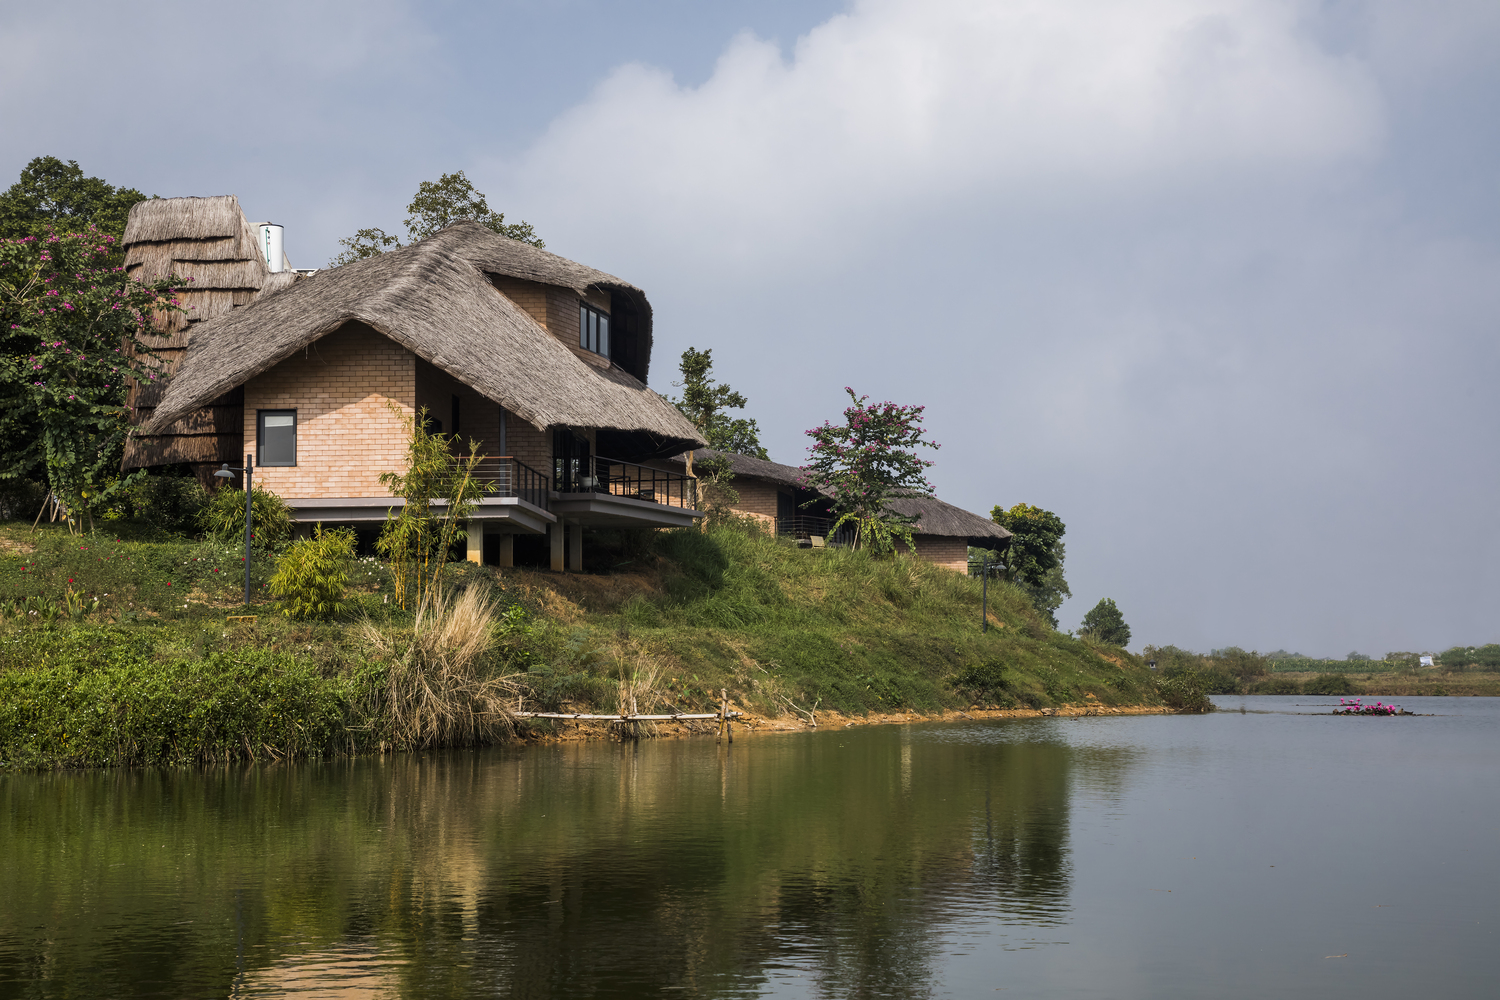 Ngôi nhà view nhìn ra hồ nước tuyệt đẹp, kiến trúc gợi hình ảnh làng quê Việt tại ngoại thành Hà Nội - Ảnh 3